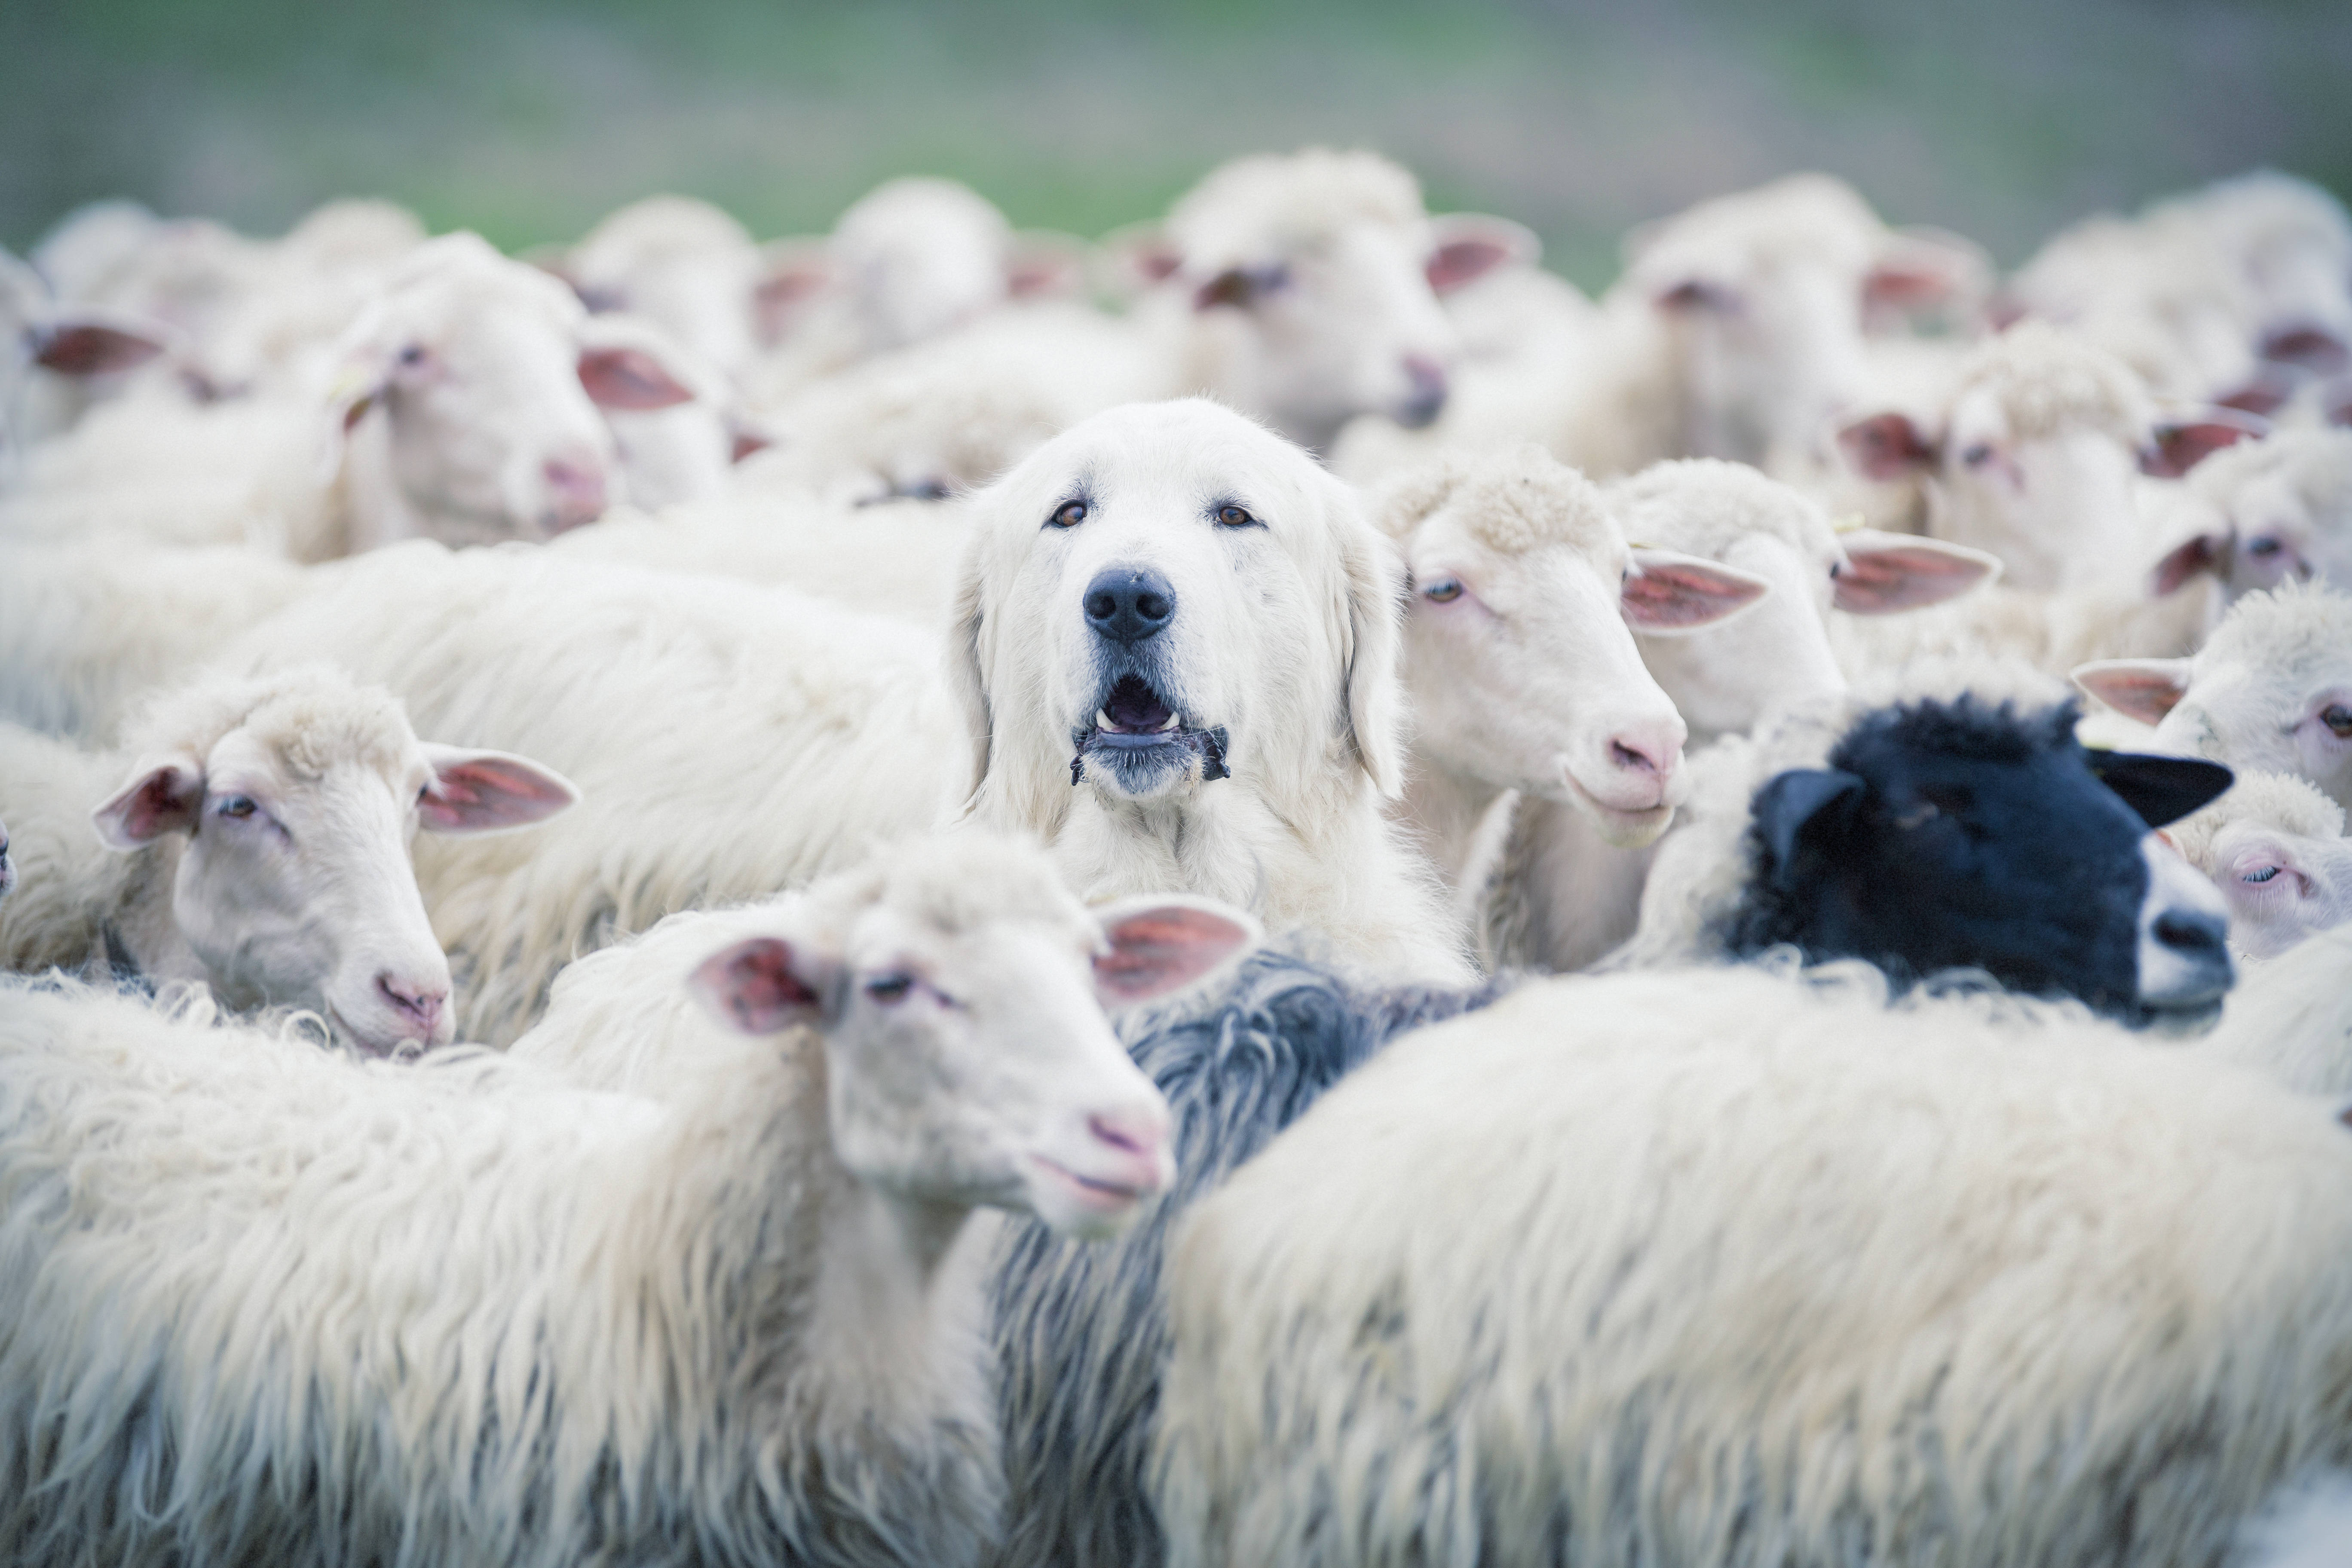 Le poids des chiens aurait doublé en 6.000 ans en Europe en raison de leur sélection pour la protection du bétail contre les grands prédateurs. © ANADMAN, Adobe Stock